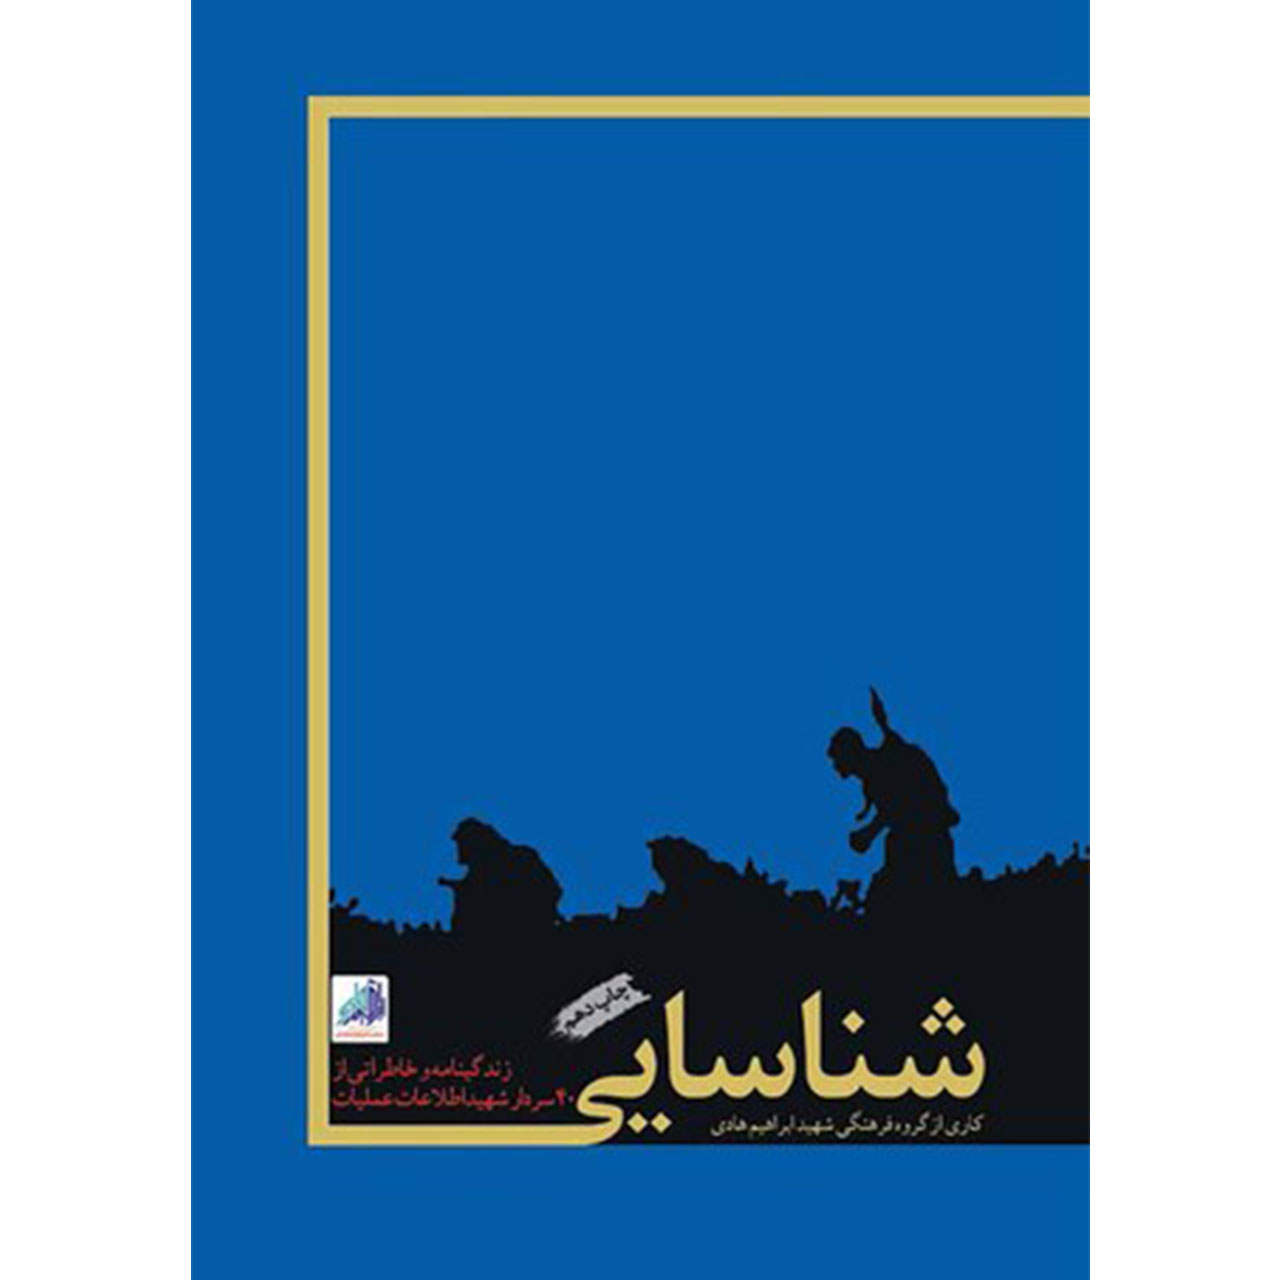 کتاب شناسایی: زندگینامه و خاطراتی از 40 سردار شهید اطلاعات و عملیات - اثر جمعی از نویسندگان